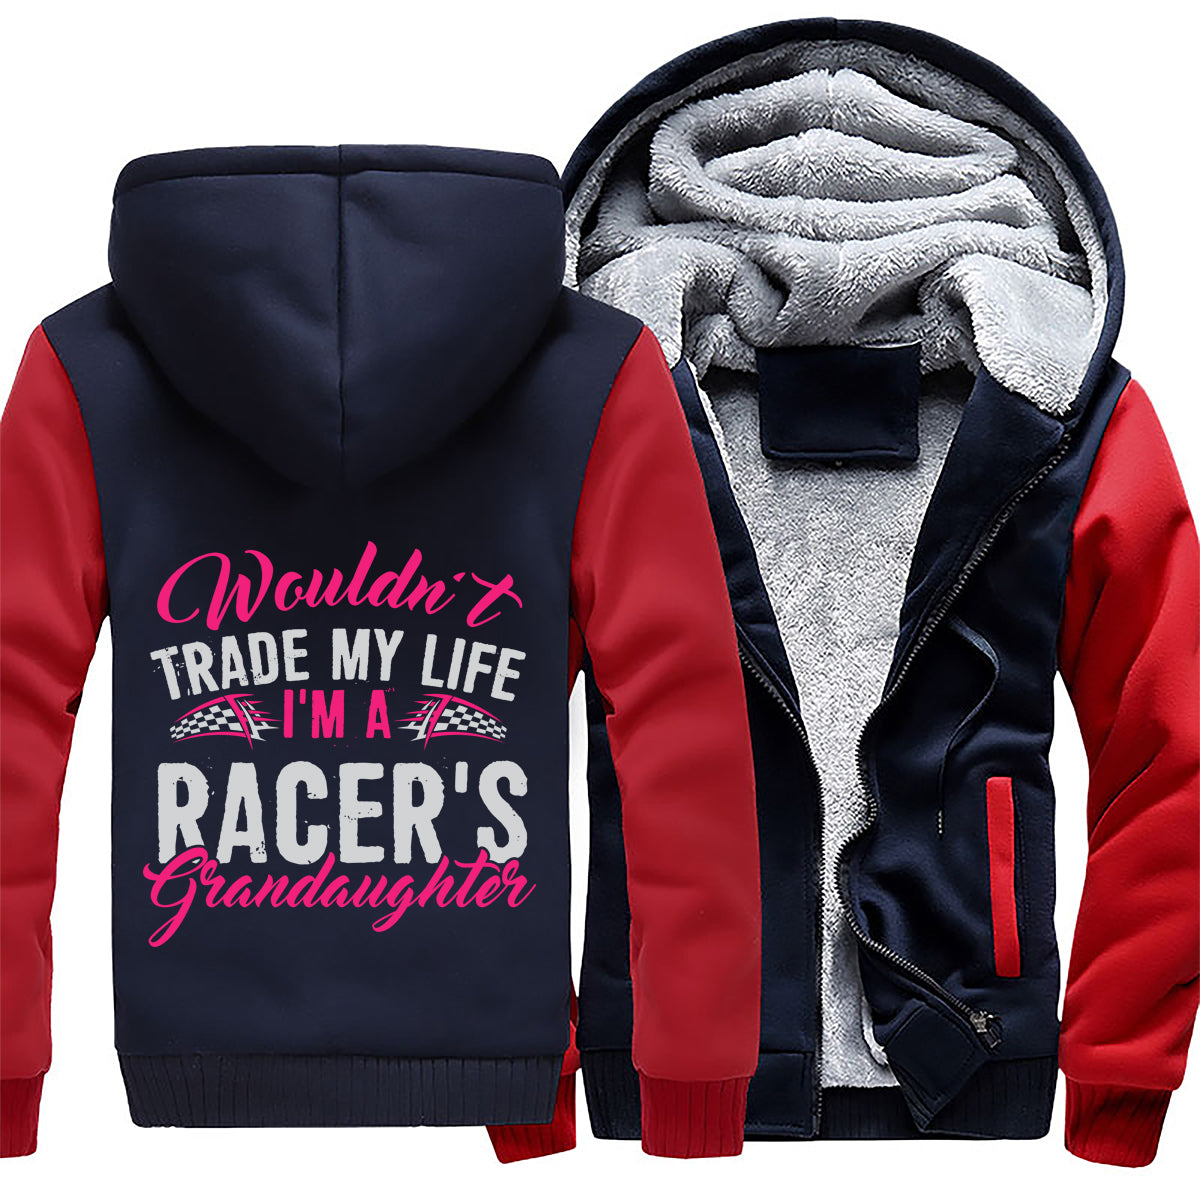 I'm A Racer's Granddaughter Jacket 